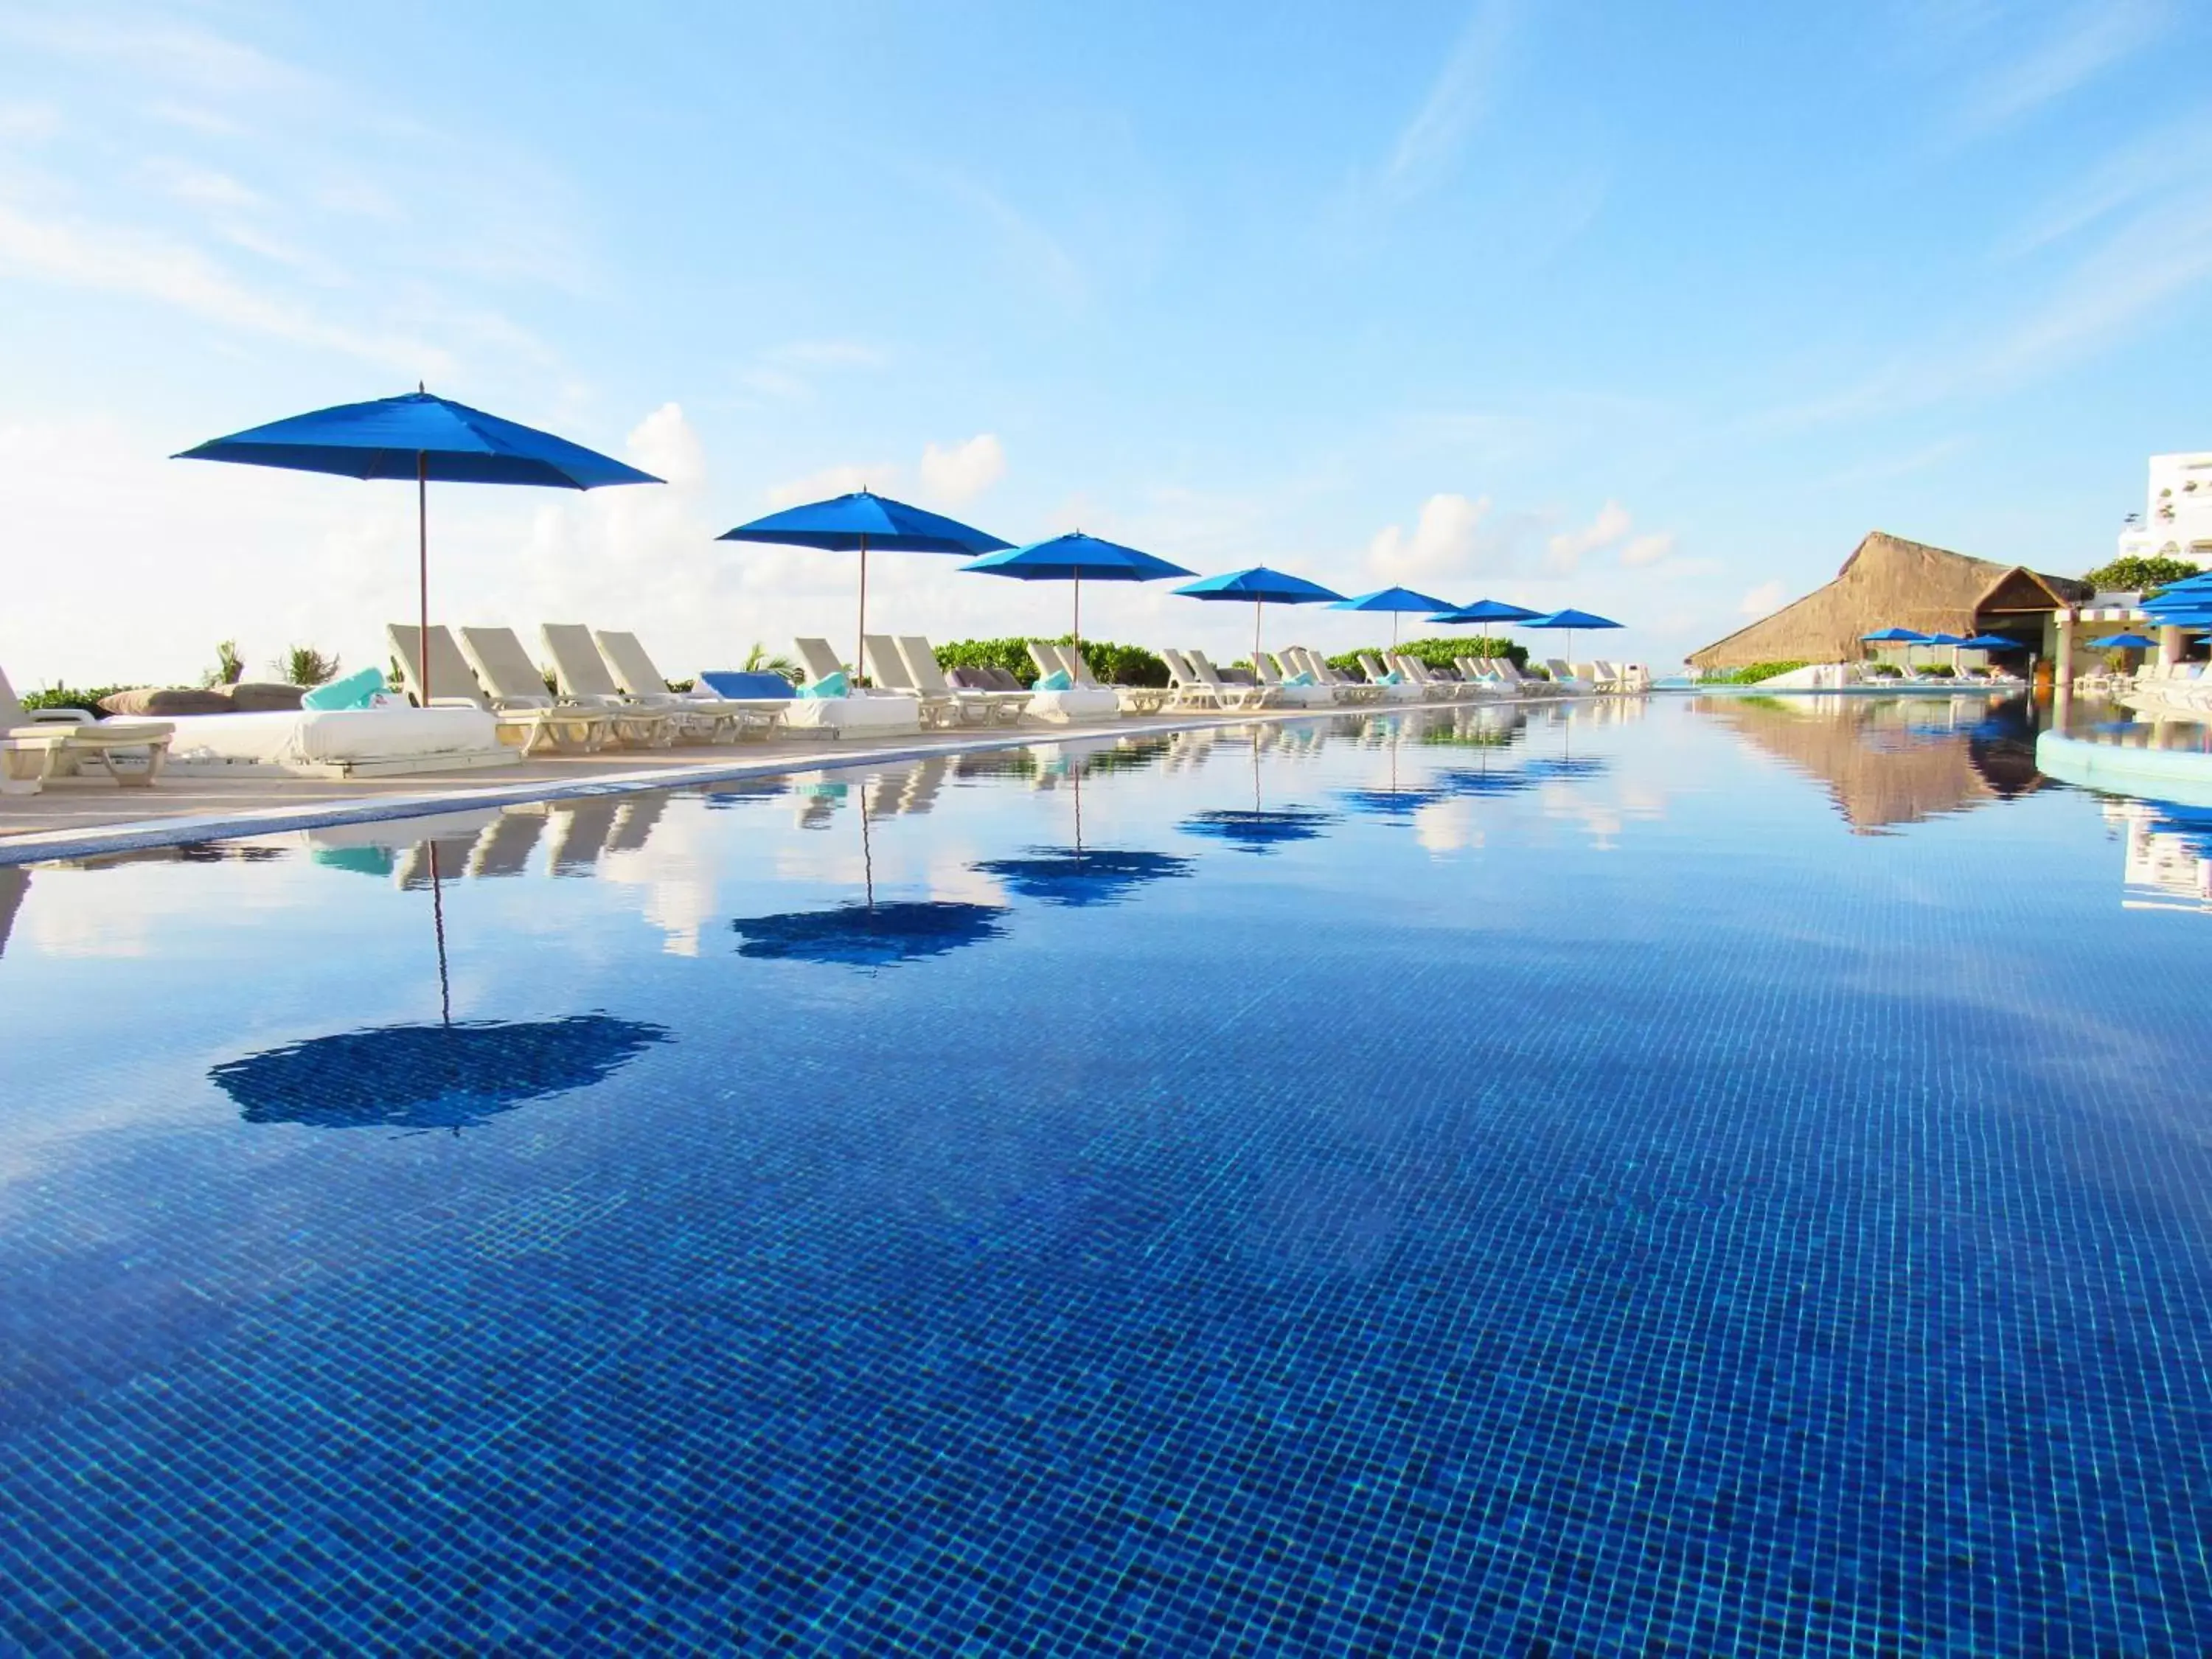 Swimming Pool in Live Aqua Beach Resort Cancun